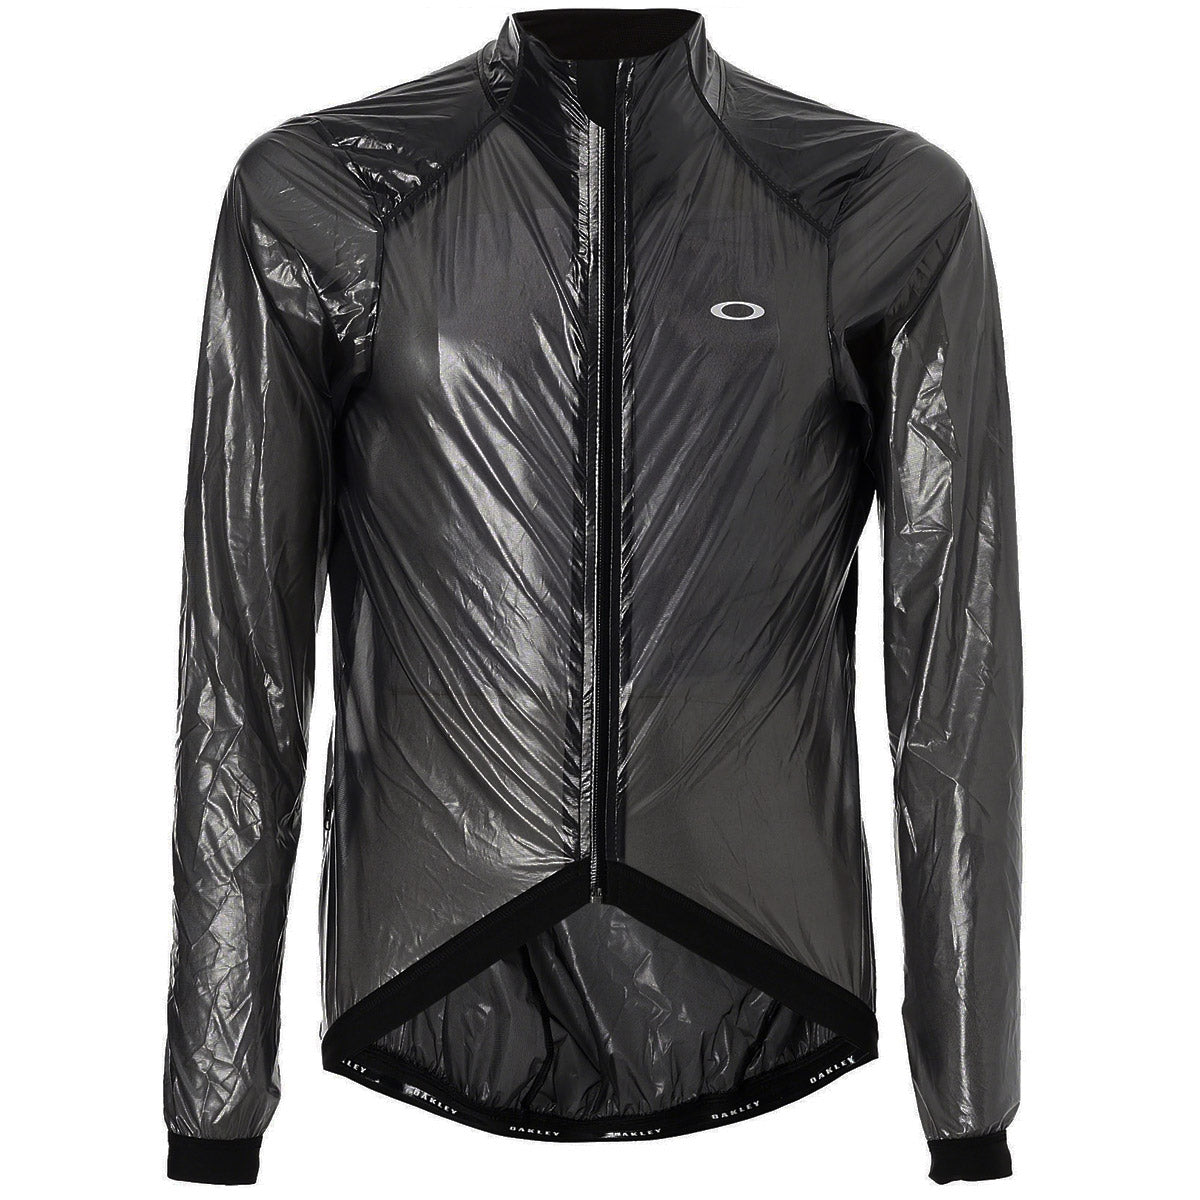 Oakley Jawbreaker Road jacket - Black | All4cycling